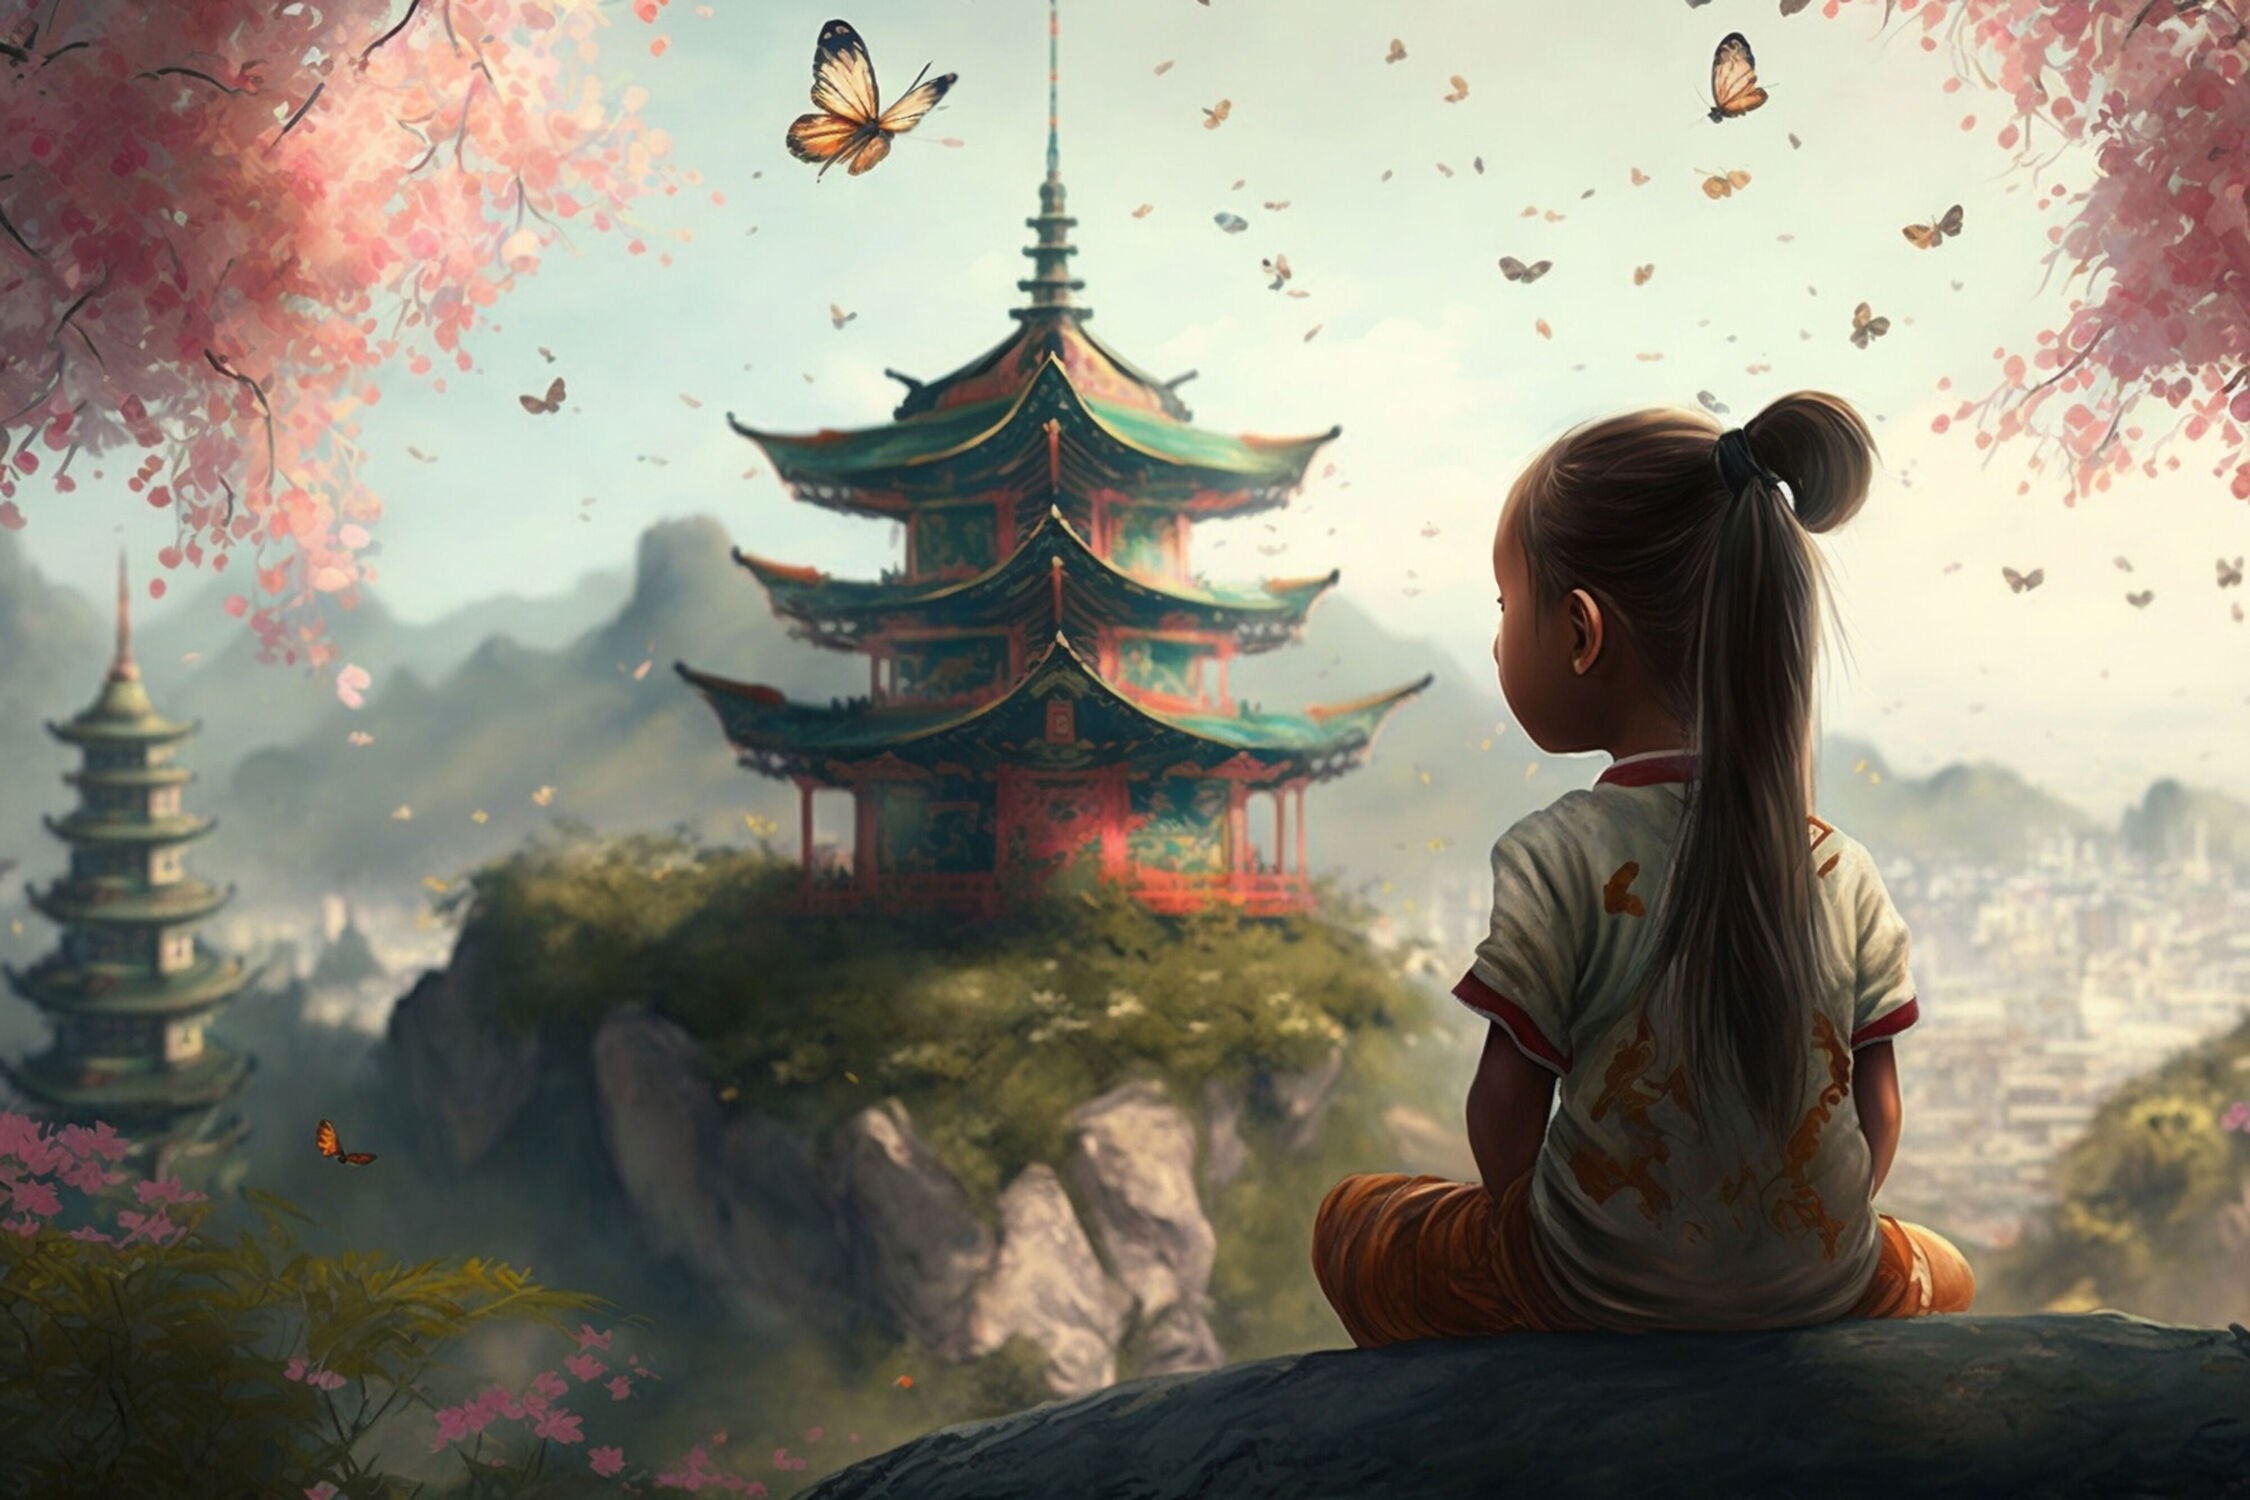 Bild mit Natur, Schmetterlinge, berg, mystisch, Tempel, Ruhig, Kultur, Felsvorsprung, Pfirsichblüten, Chinesisches Mädchen